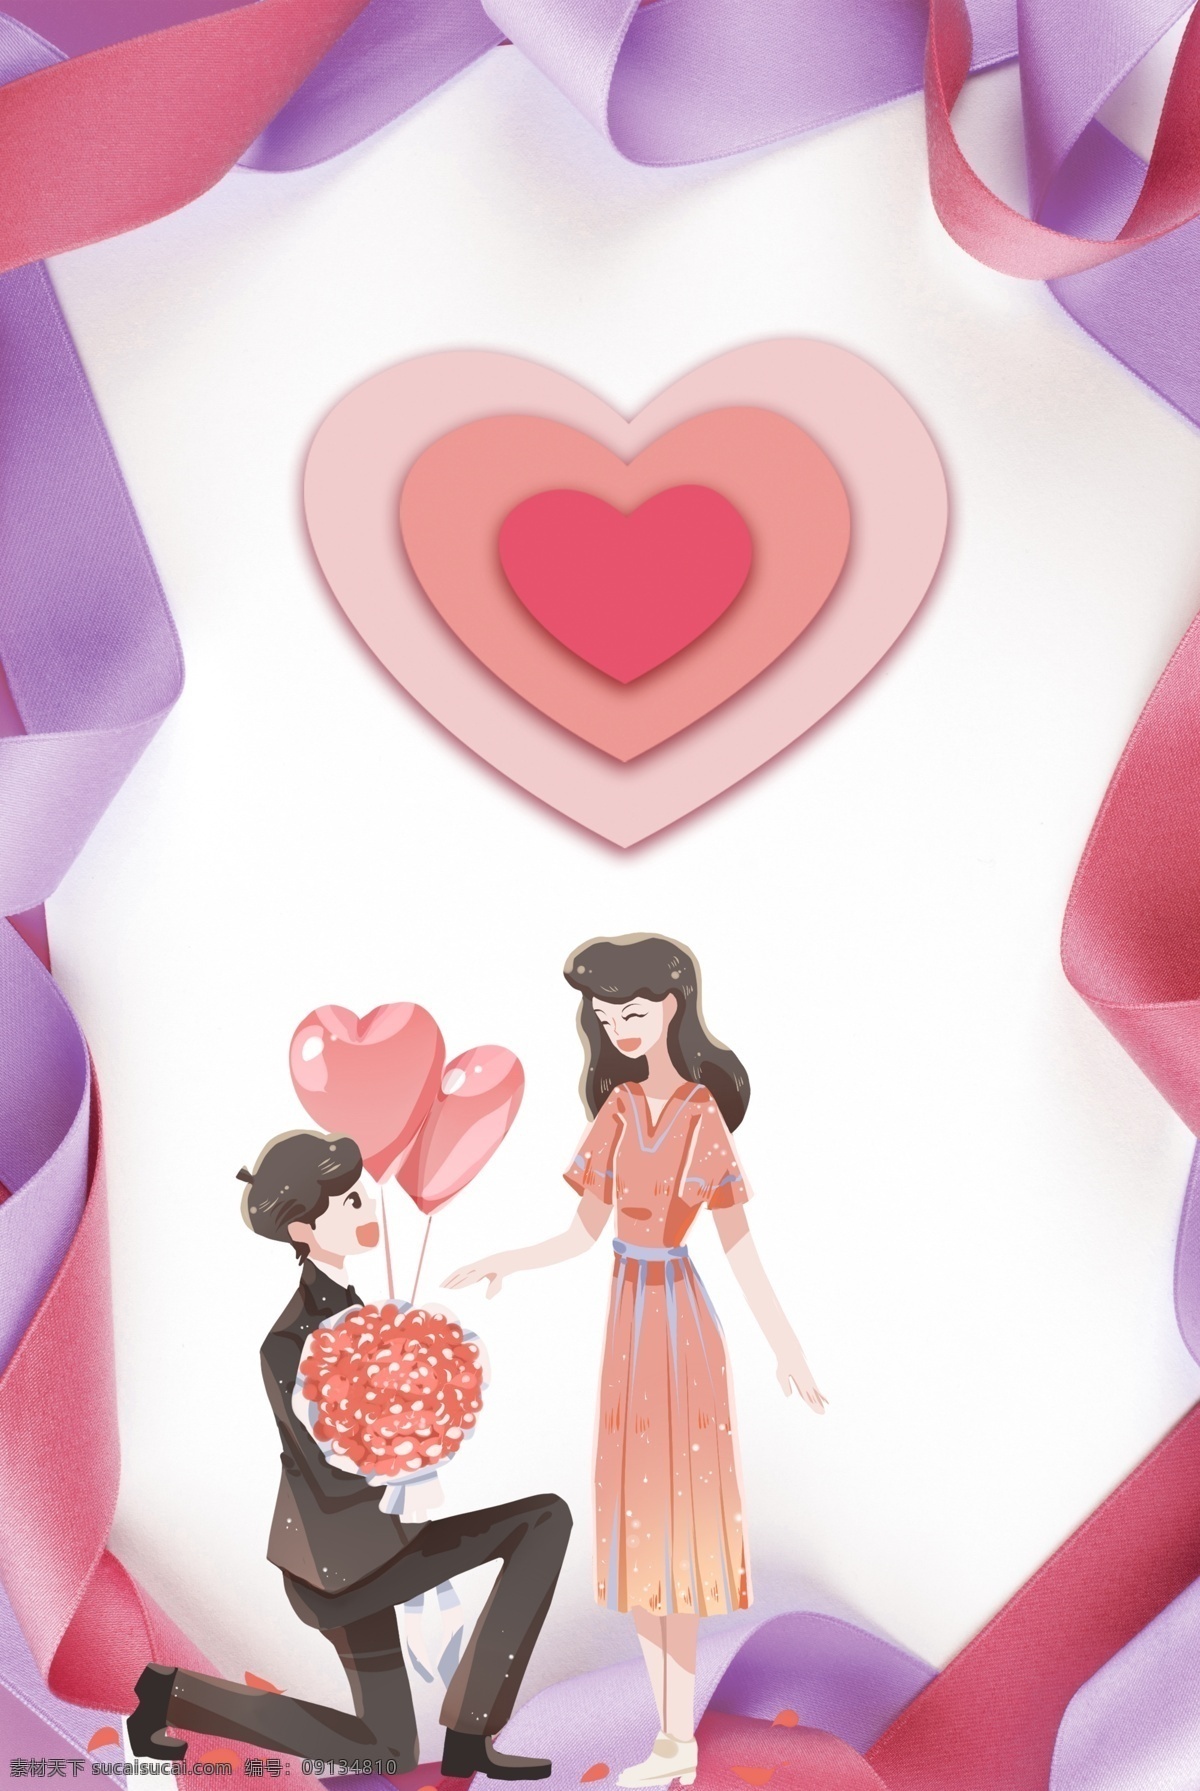 粉 紫色 浪漫 520 情人节 海报 背景 粉紫色 文艺 清新 卡通 手绘 质感 纹理 爱心